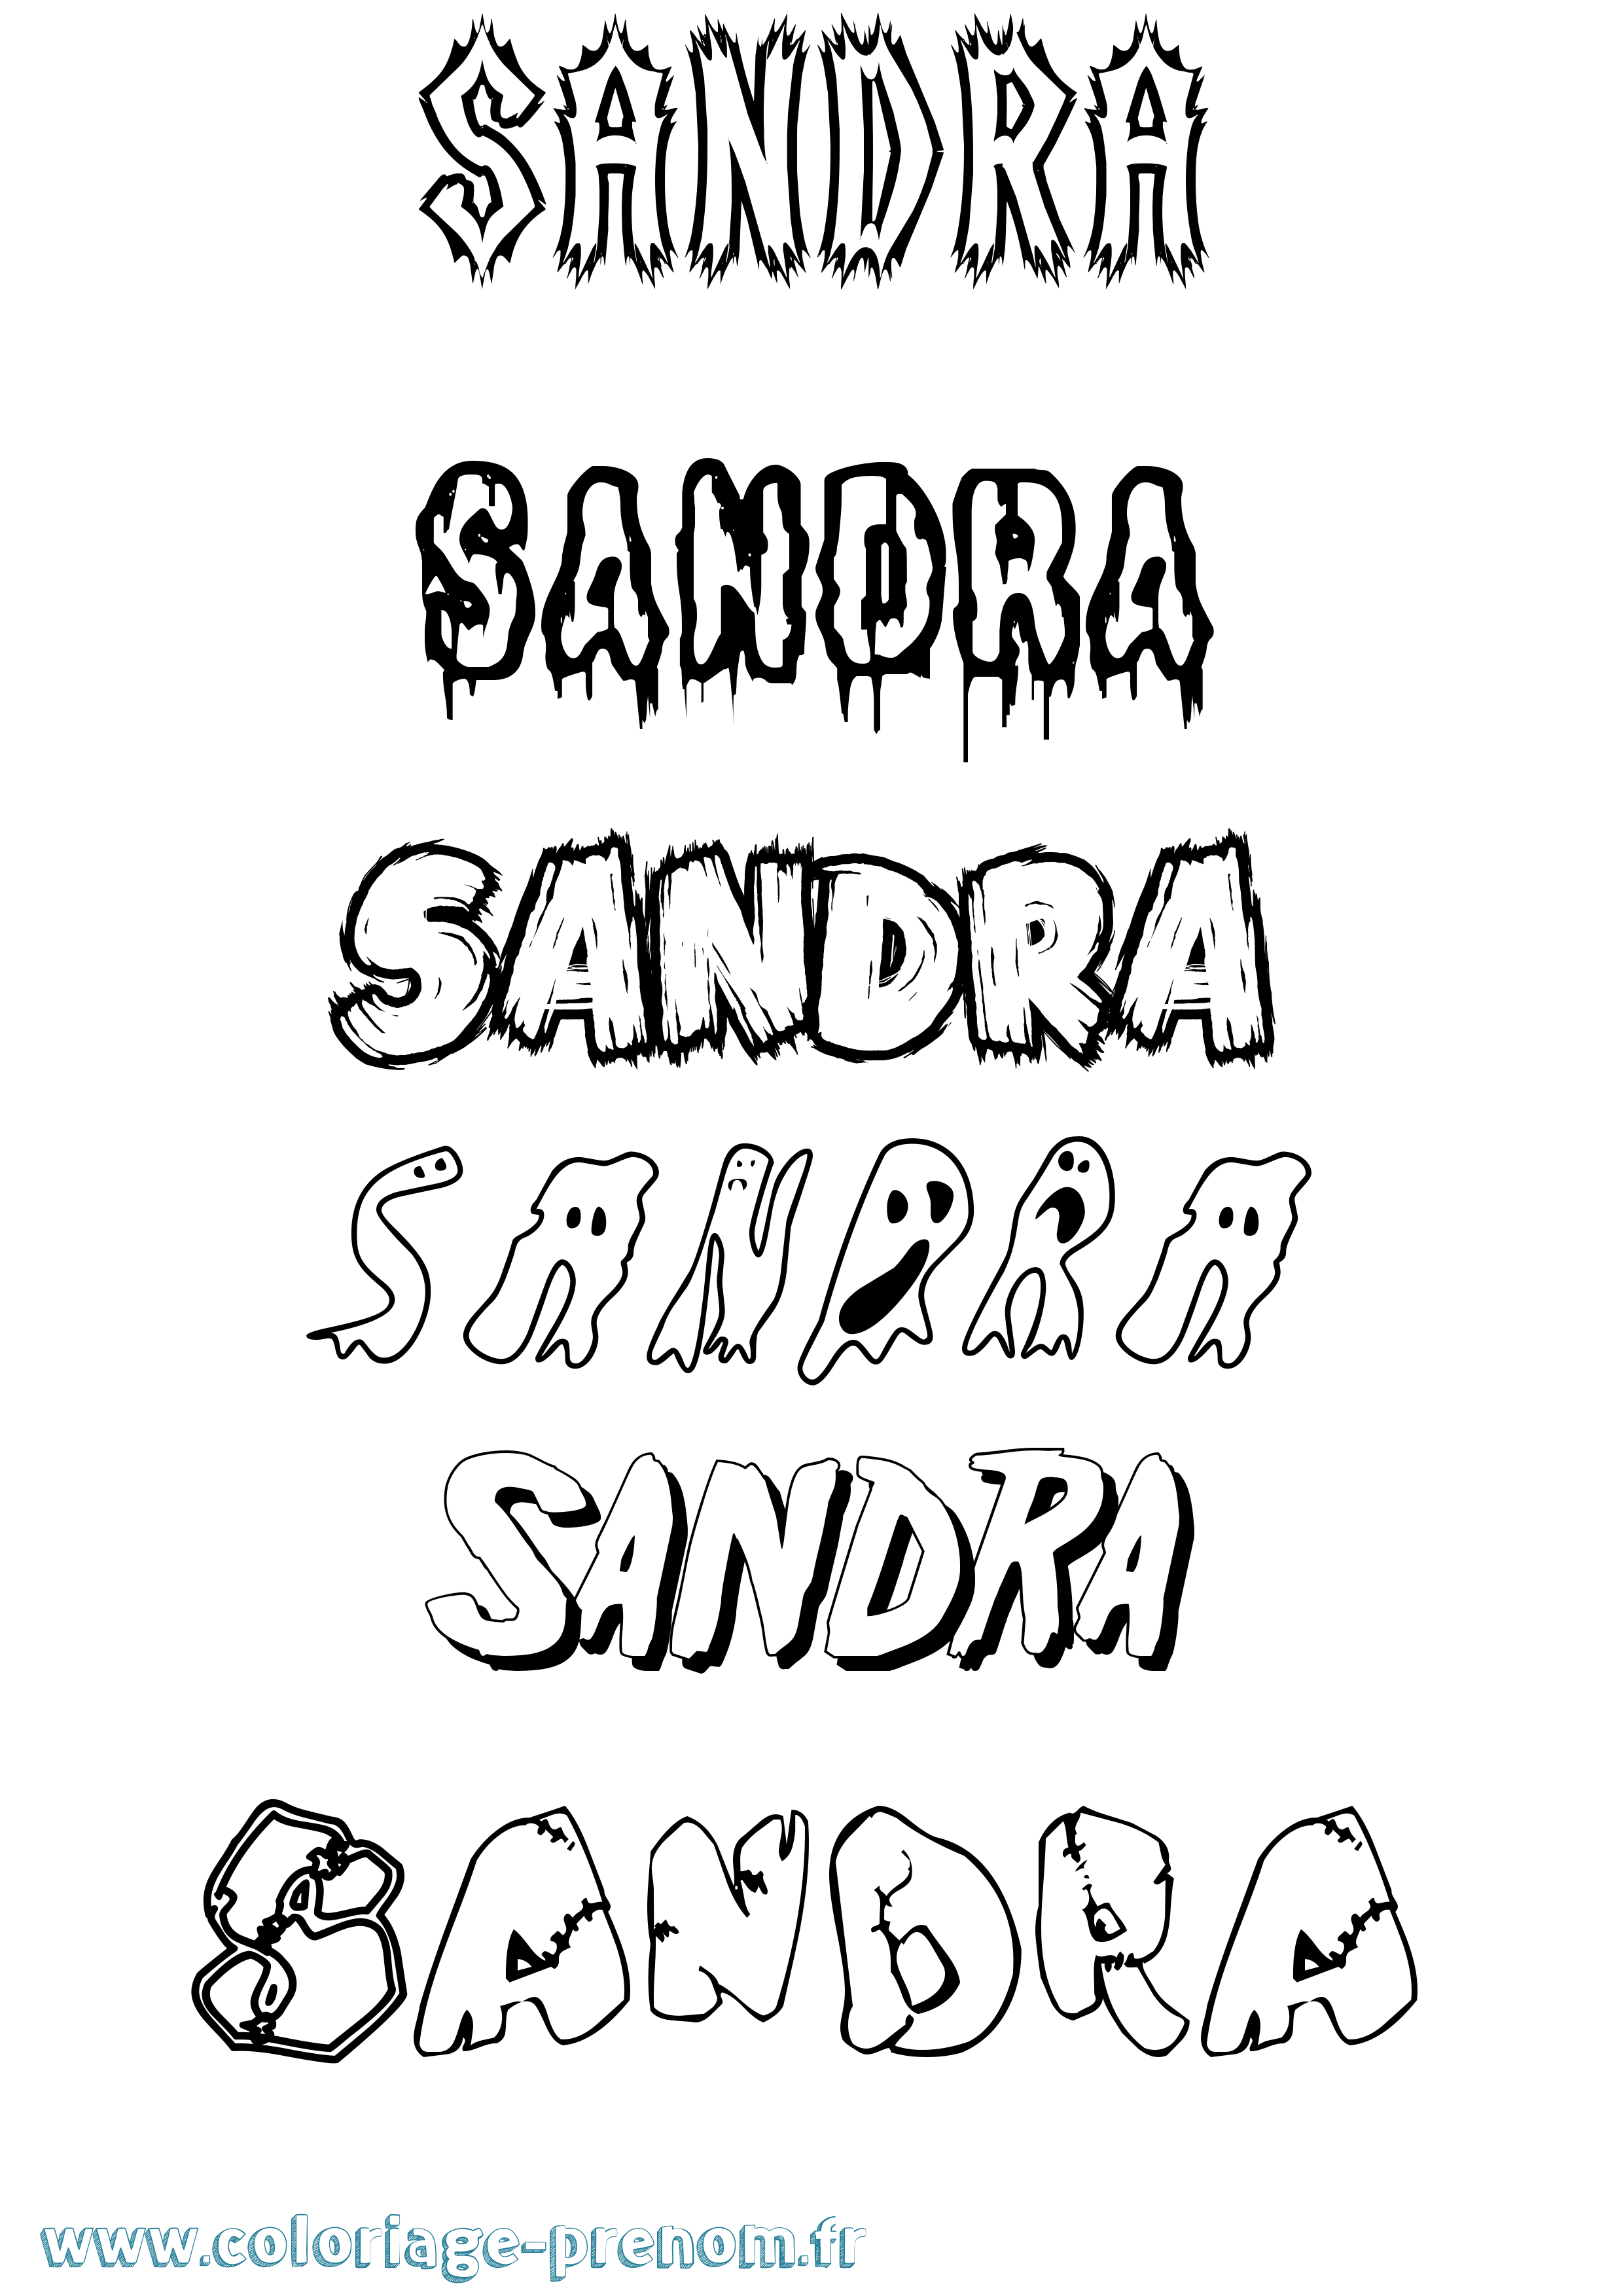 Coloriage prénom Sandra Frisson